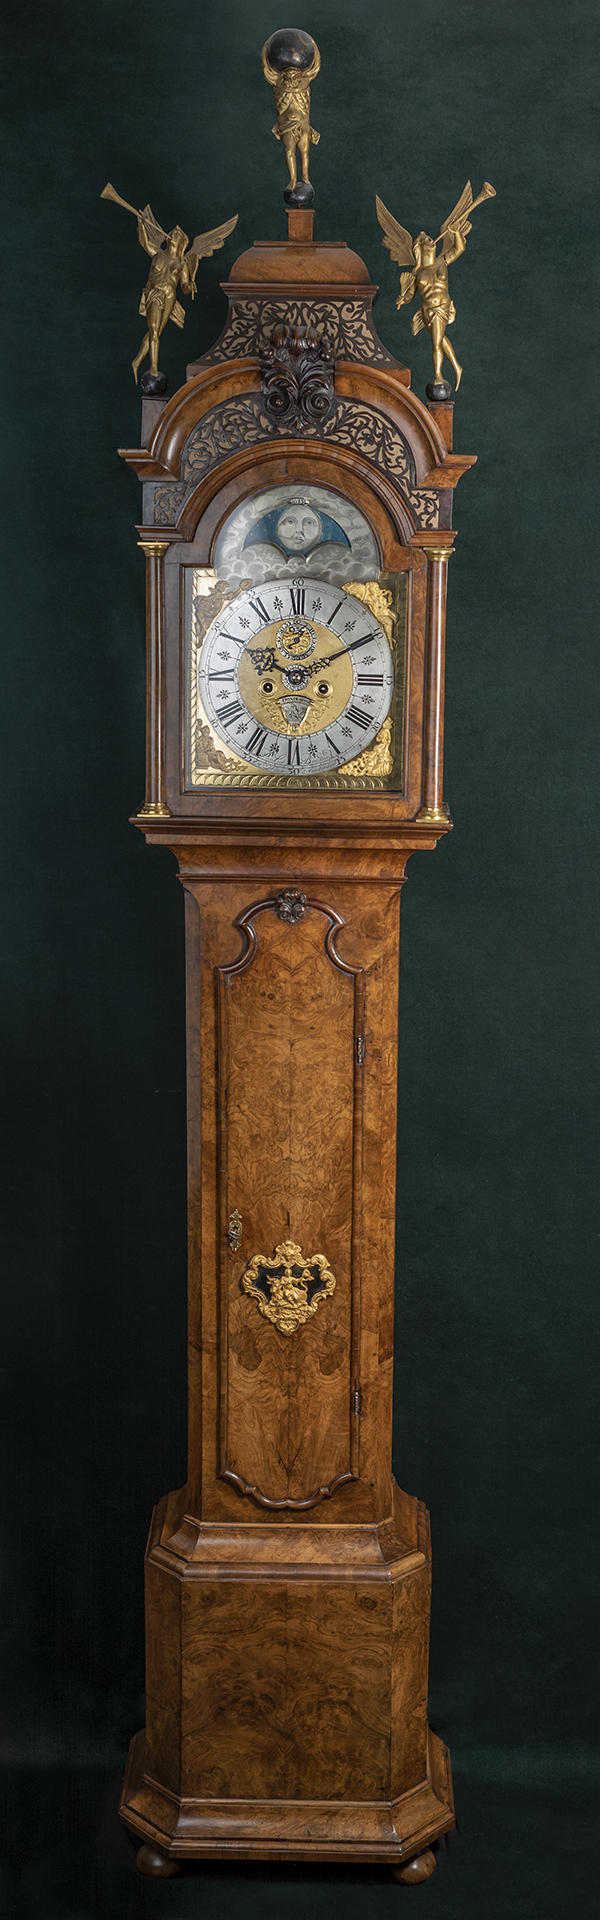 Amsterdams Staand Horloge gesigneerd Paulus Bramer en soon Amsterdam ca 1750